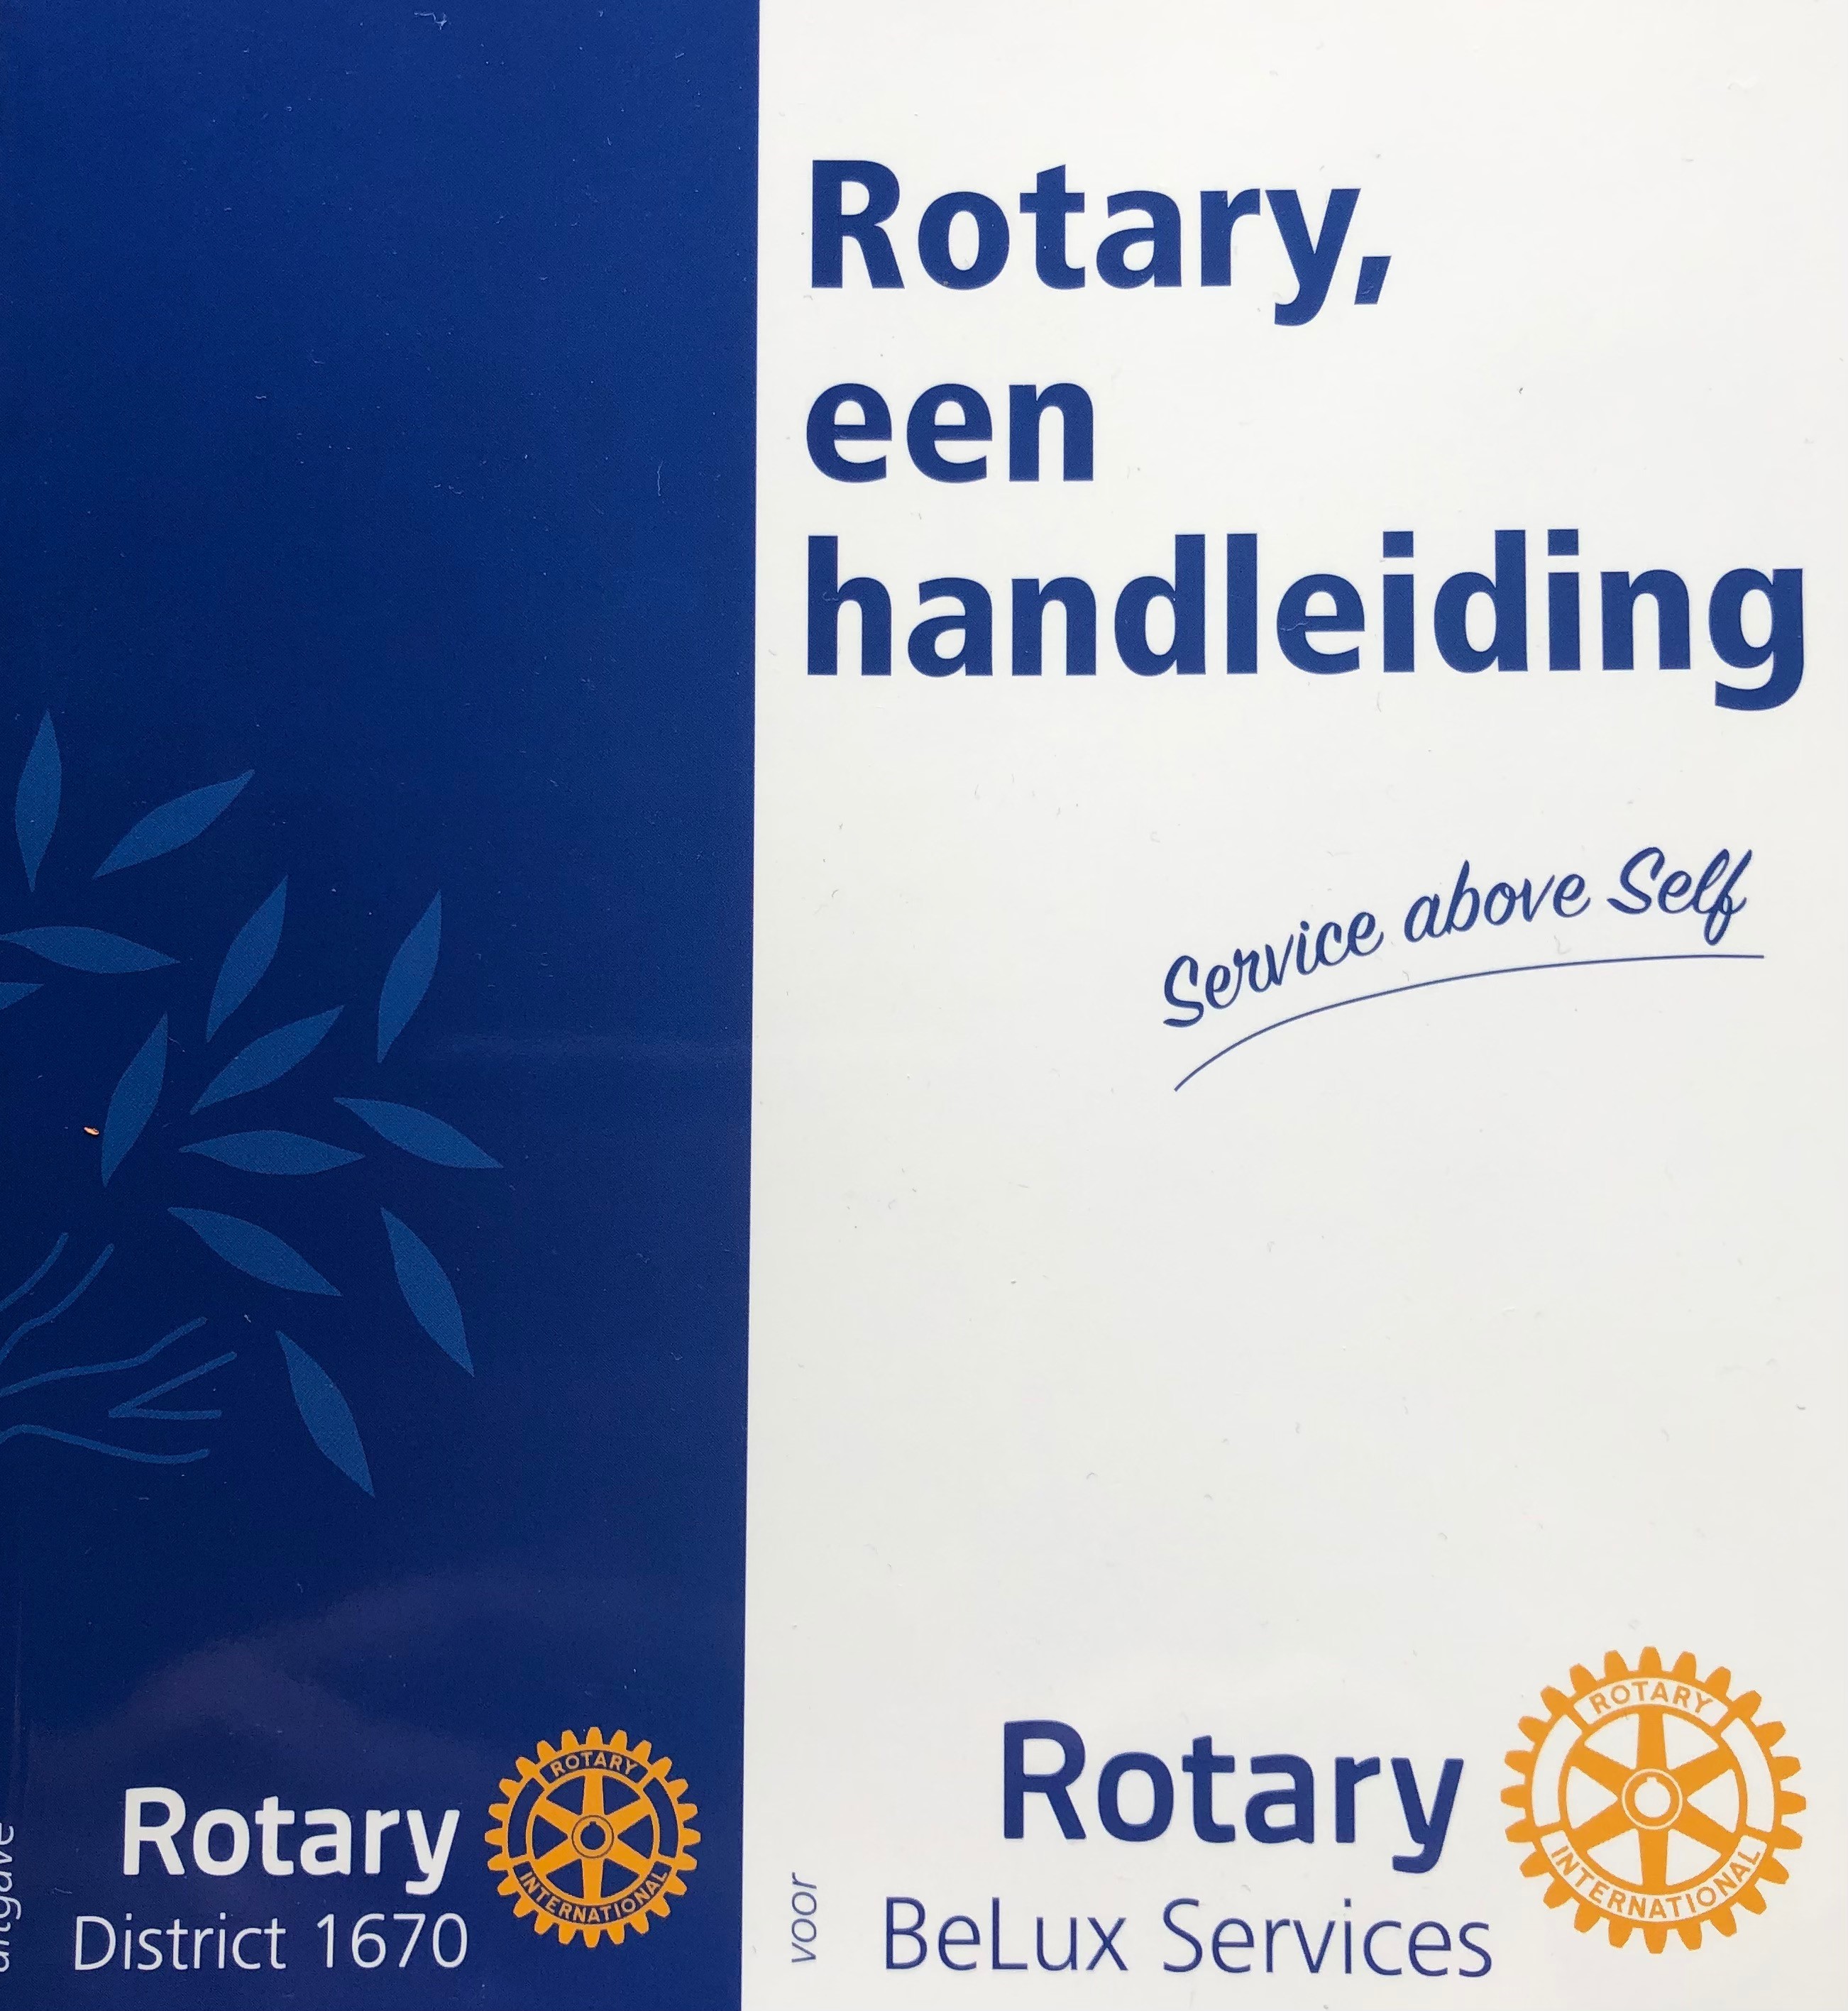 Rotary, a manual